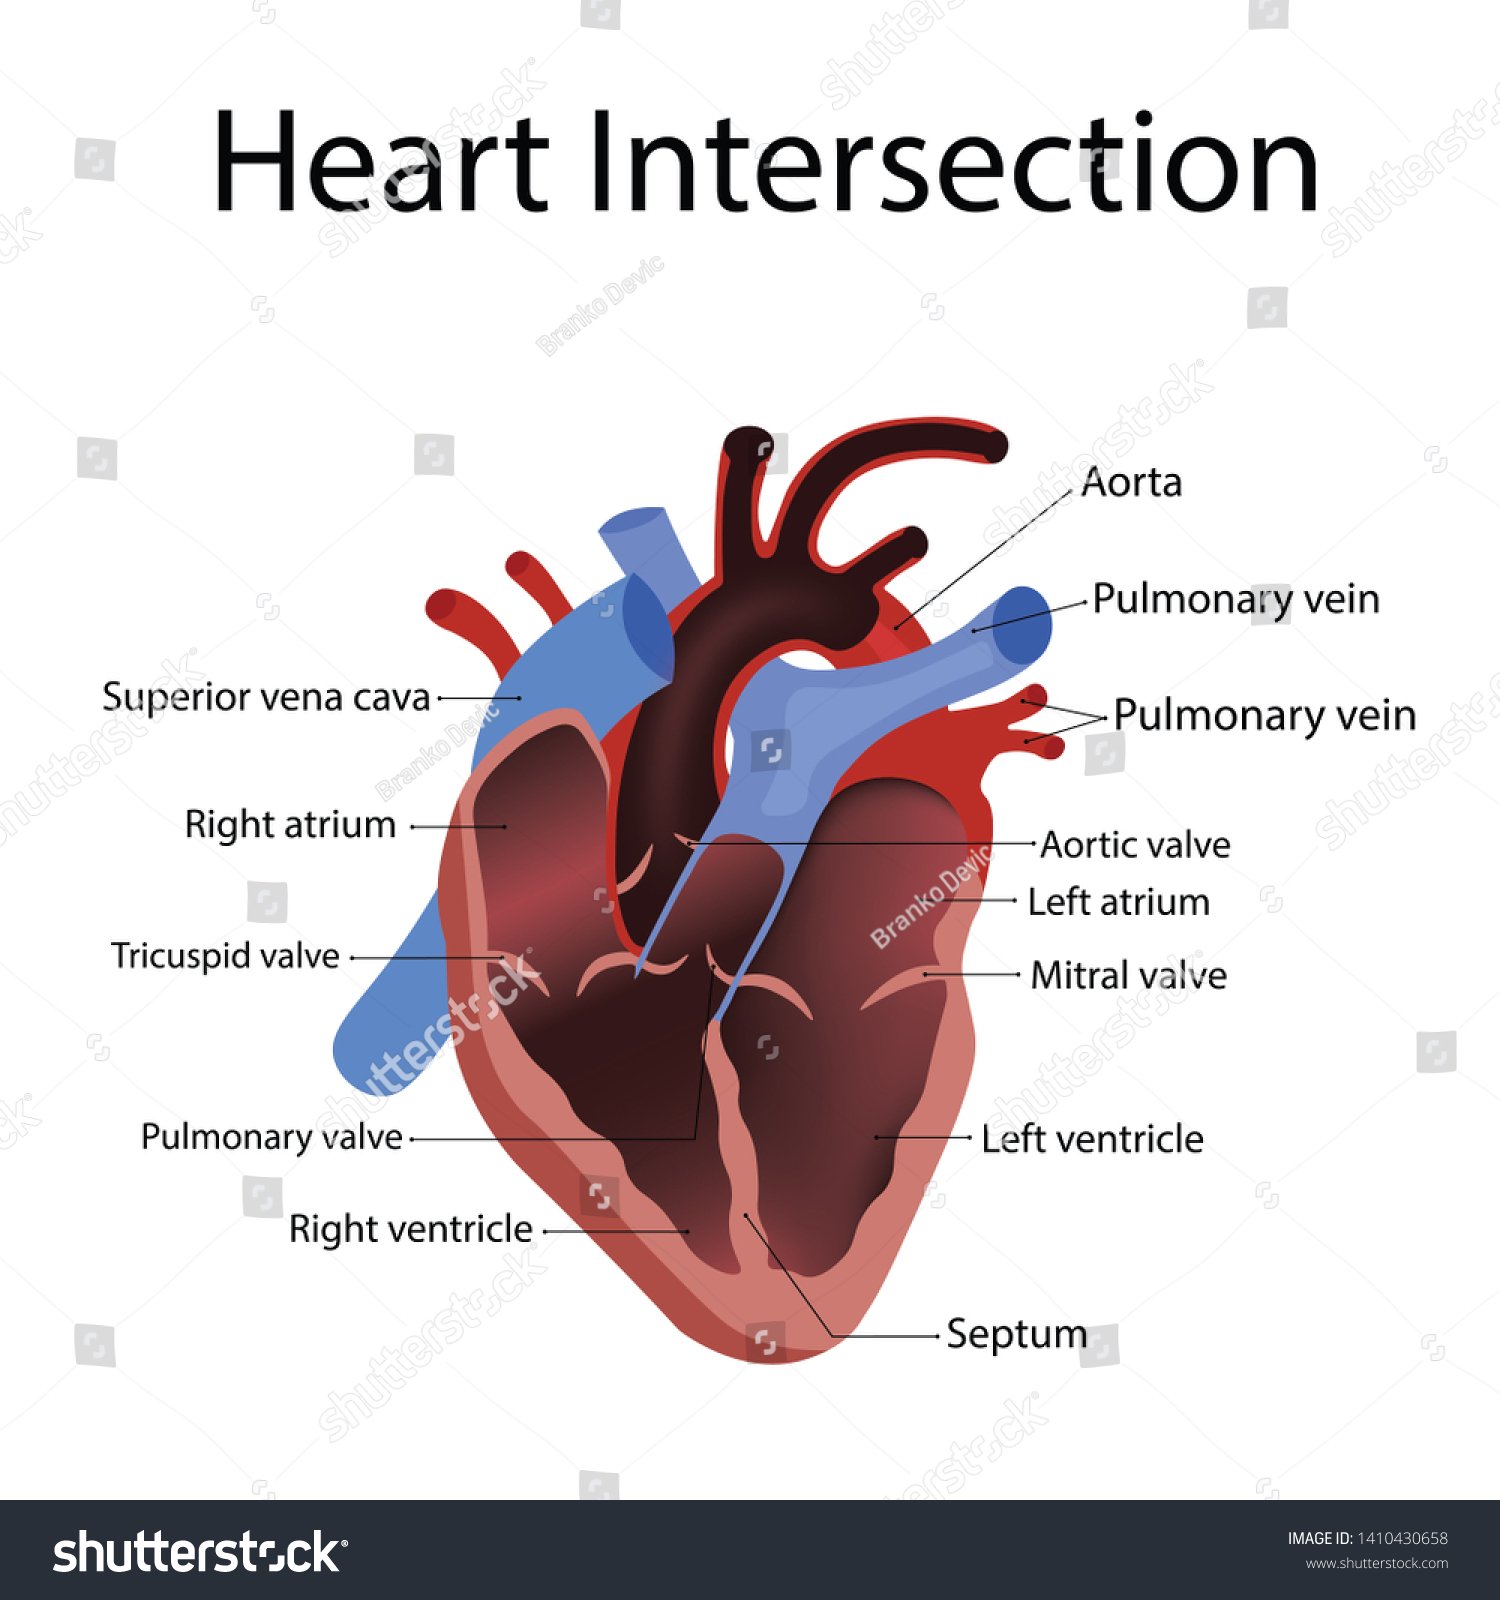 Heart Anatomy Types Heart Disease Illustration Stock Illustration ...